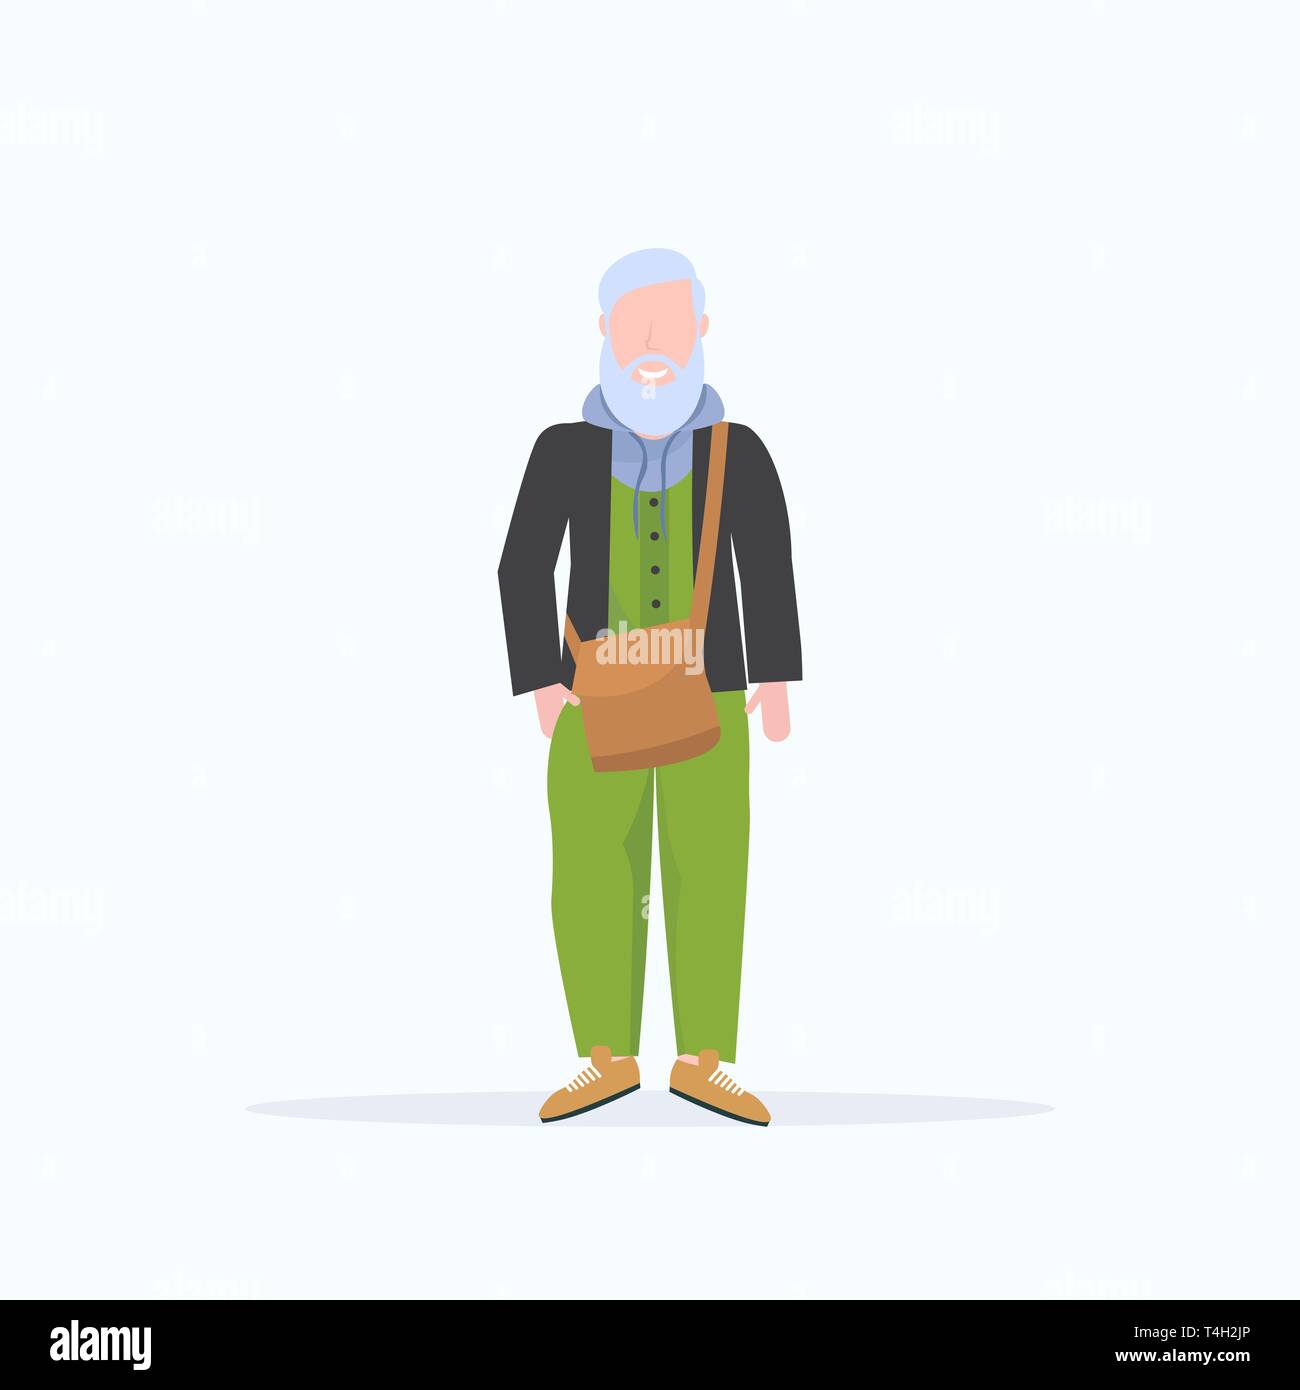 Casual reifer Mann dar lächelnd Senior graue Haare Person tragen trendige Kleidung männliche Zeichentrickfigur in voller Länge flache weiße Hintergrund Stock Vektor